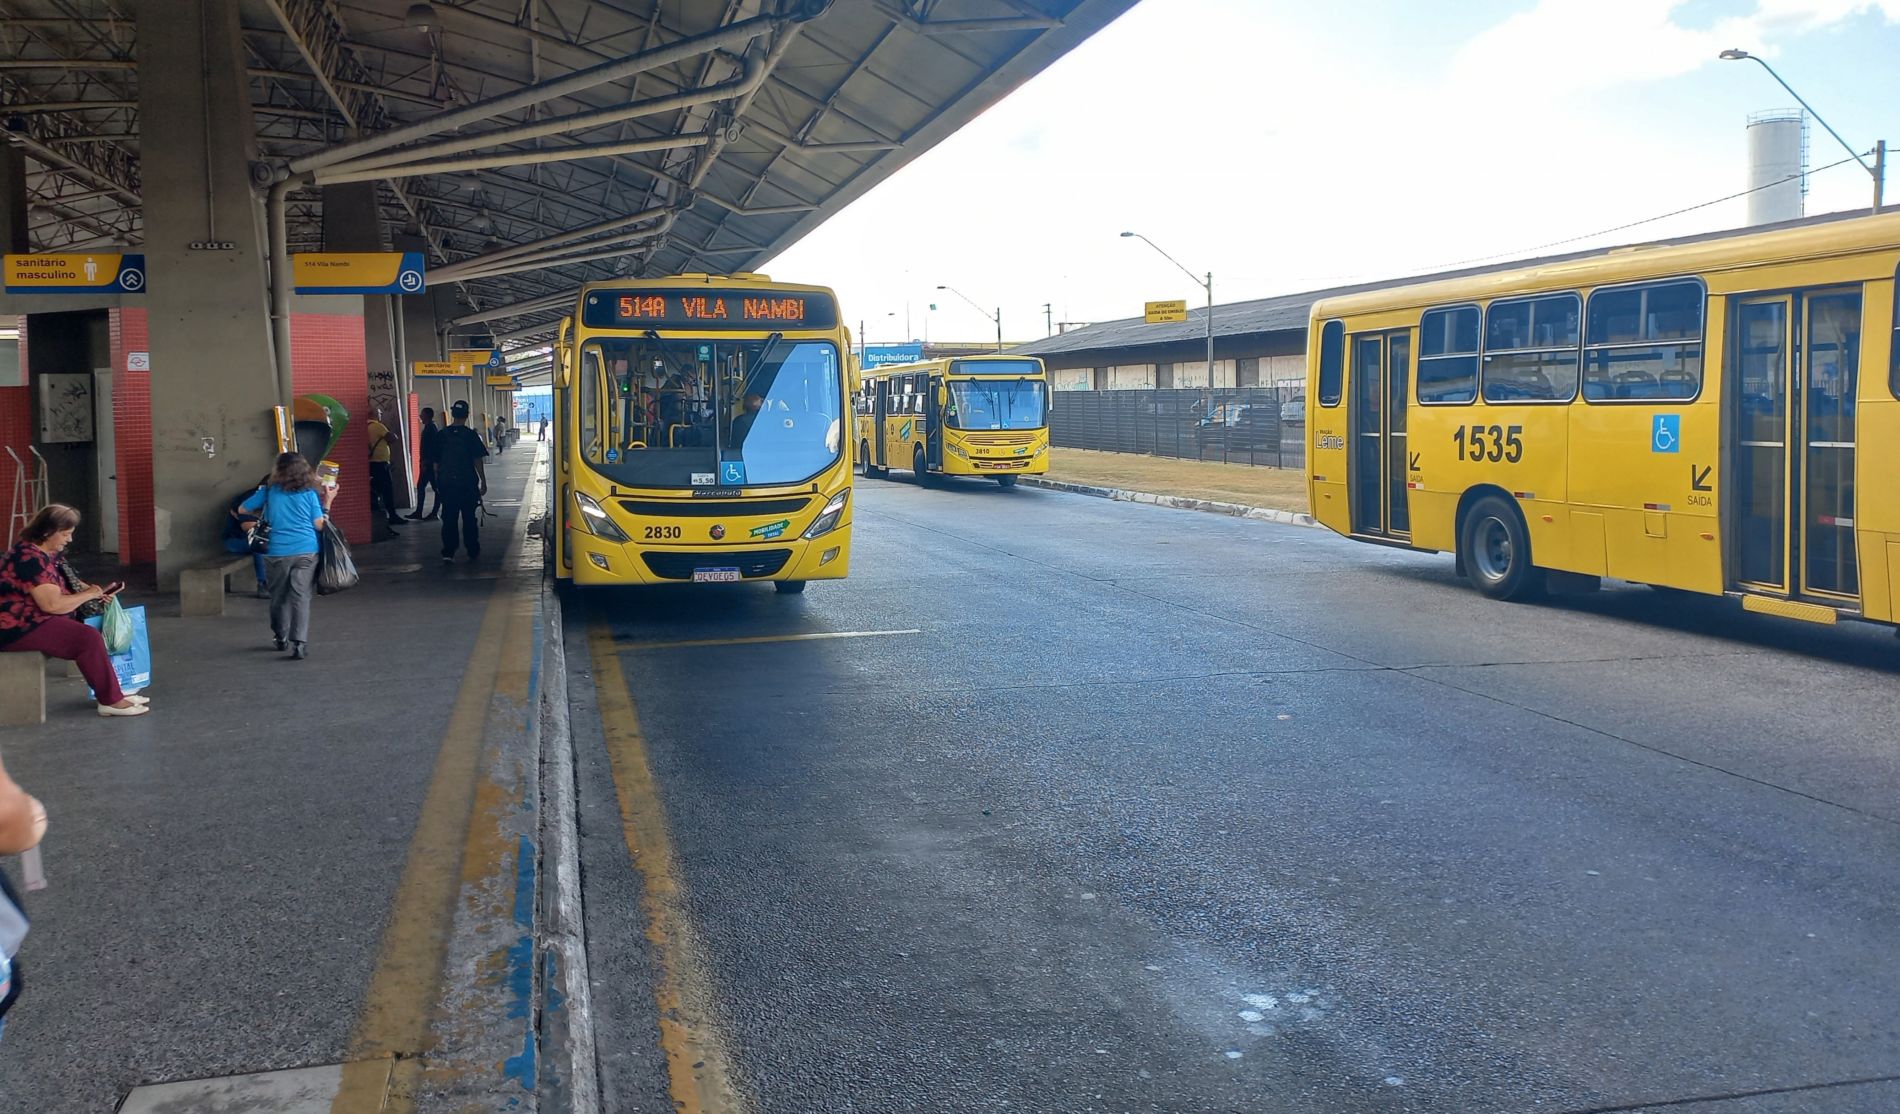 A imagem foi feita no Terminal Vila Arens, e mostra a plataforma de passageiros e um ônibus da linha municipal com letreiro 514A, com destino à Vila Nambi. A linha opera a partir desta quinta-feira (17) com novos itinerários.